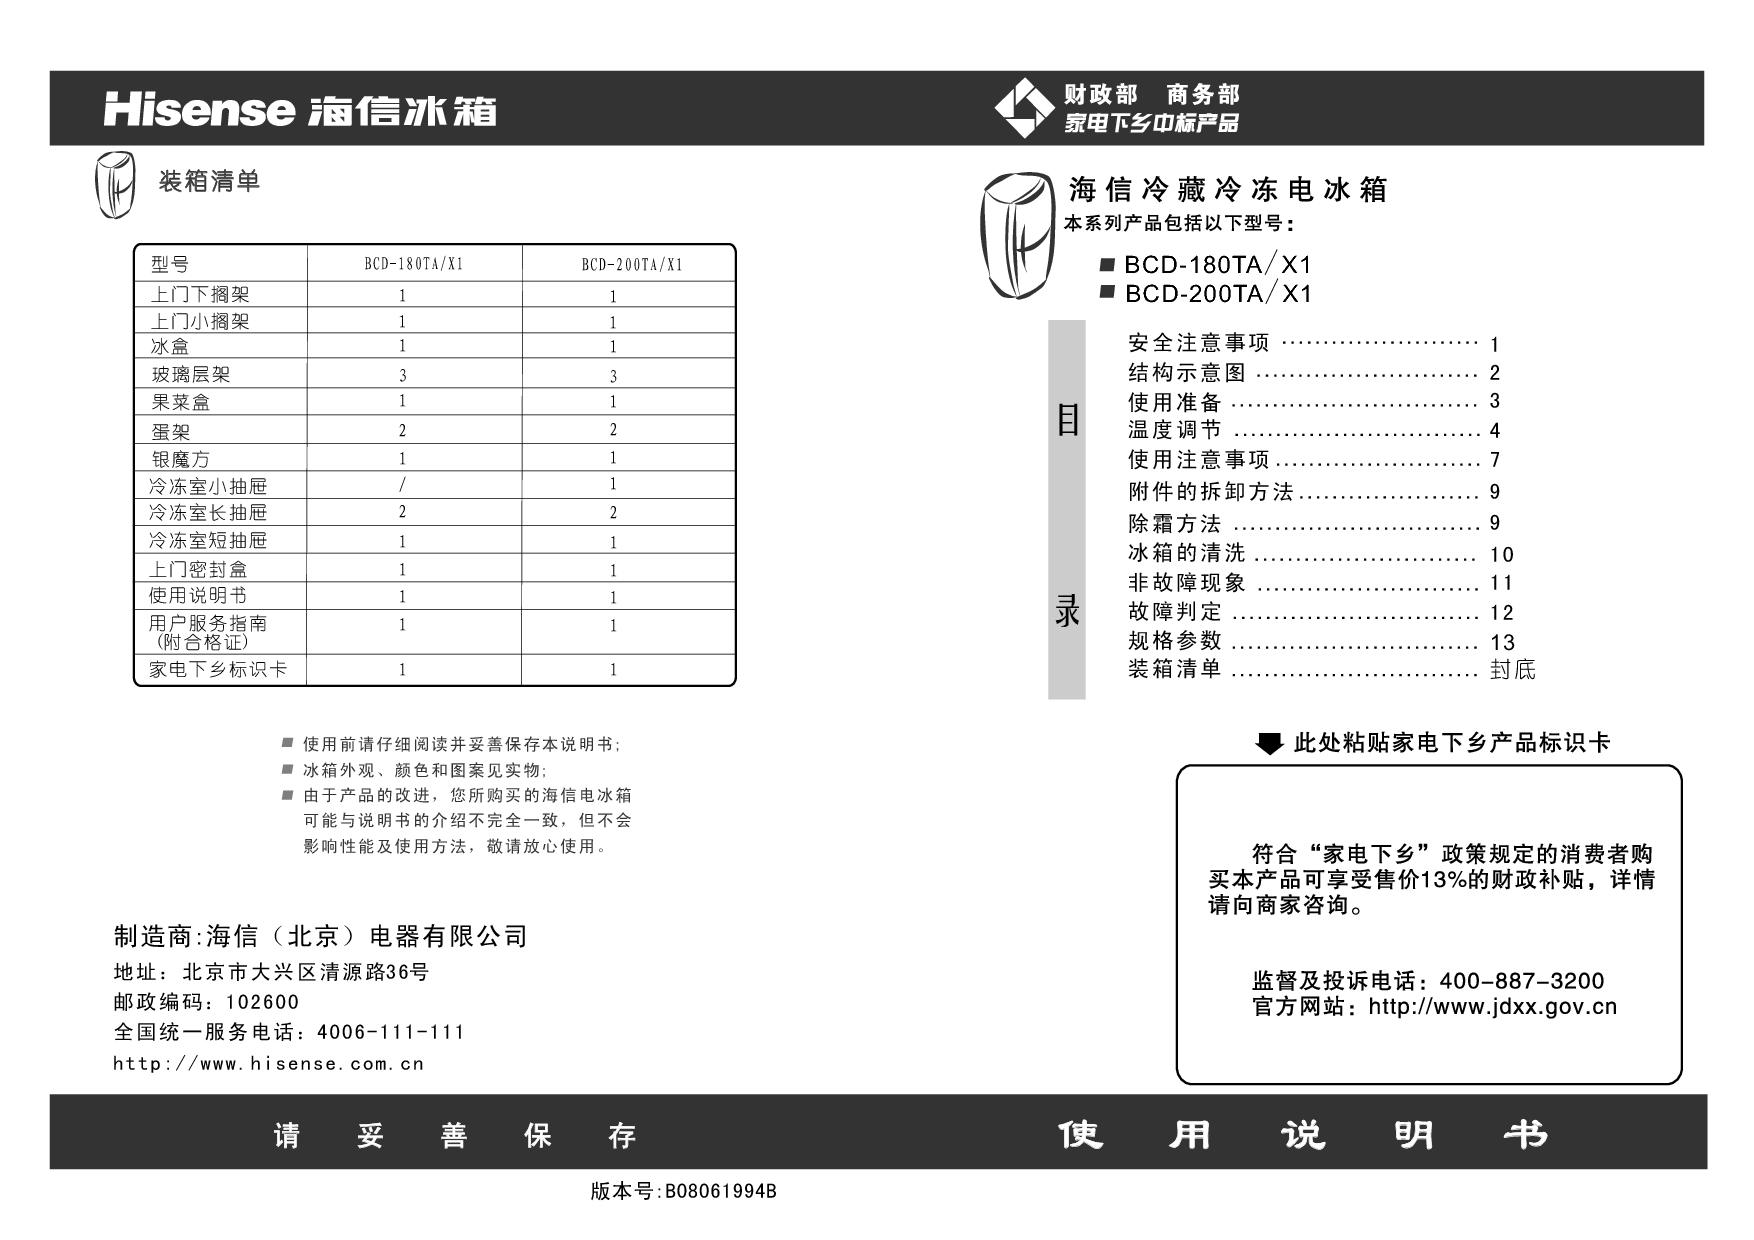 海信 Hisense BCD-180TA/X1 使用说明书 封面